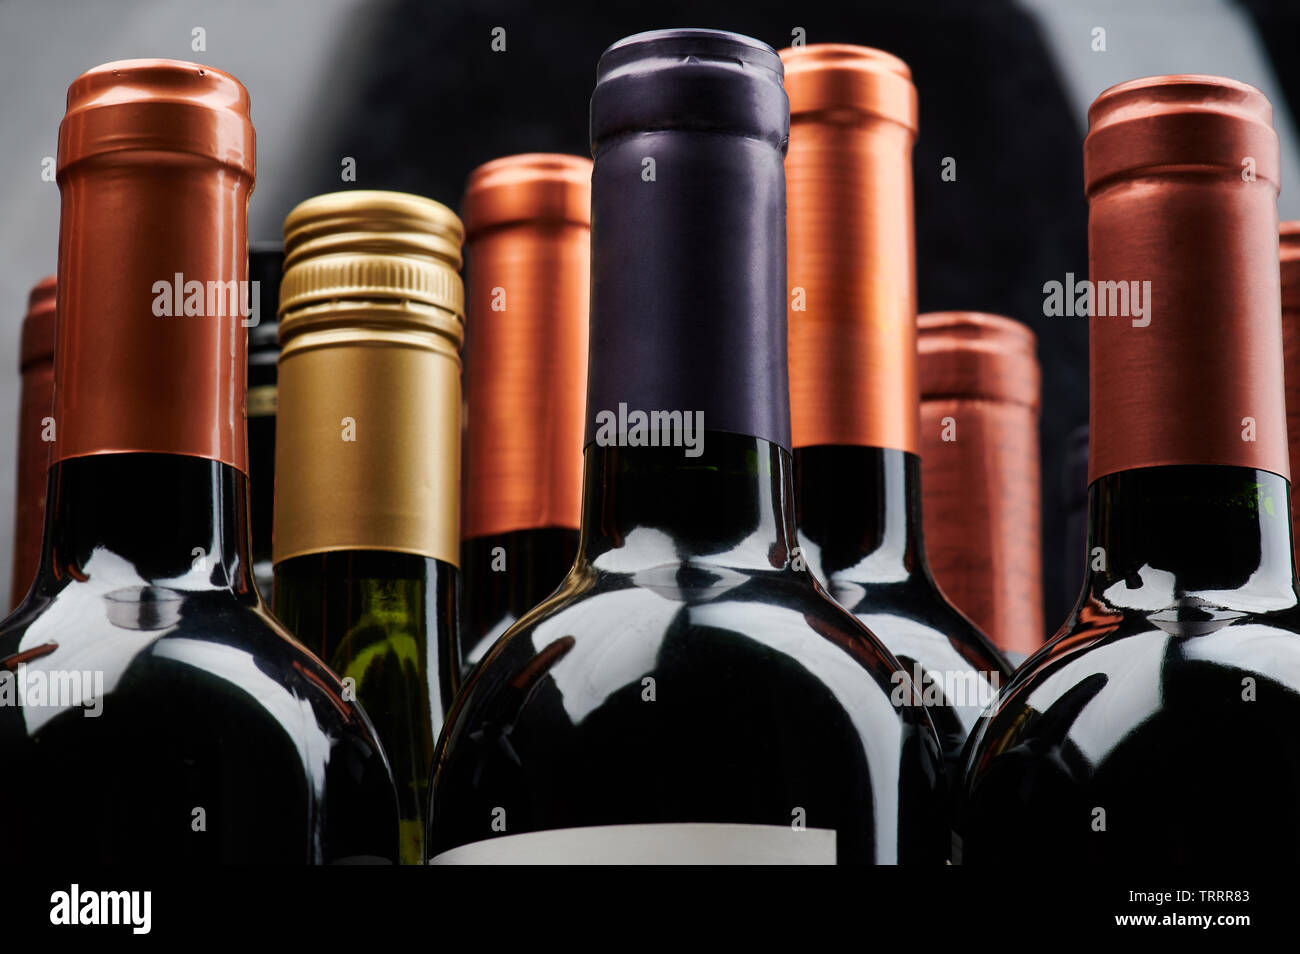 Les différentes bouteilles de vin vue rapprochée de la pile Banque D'Images